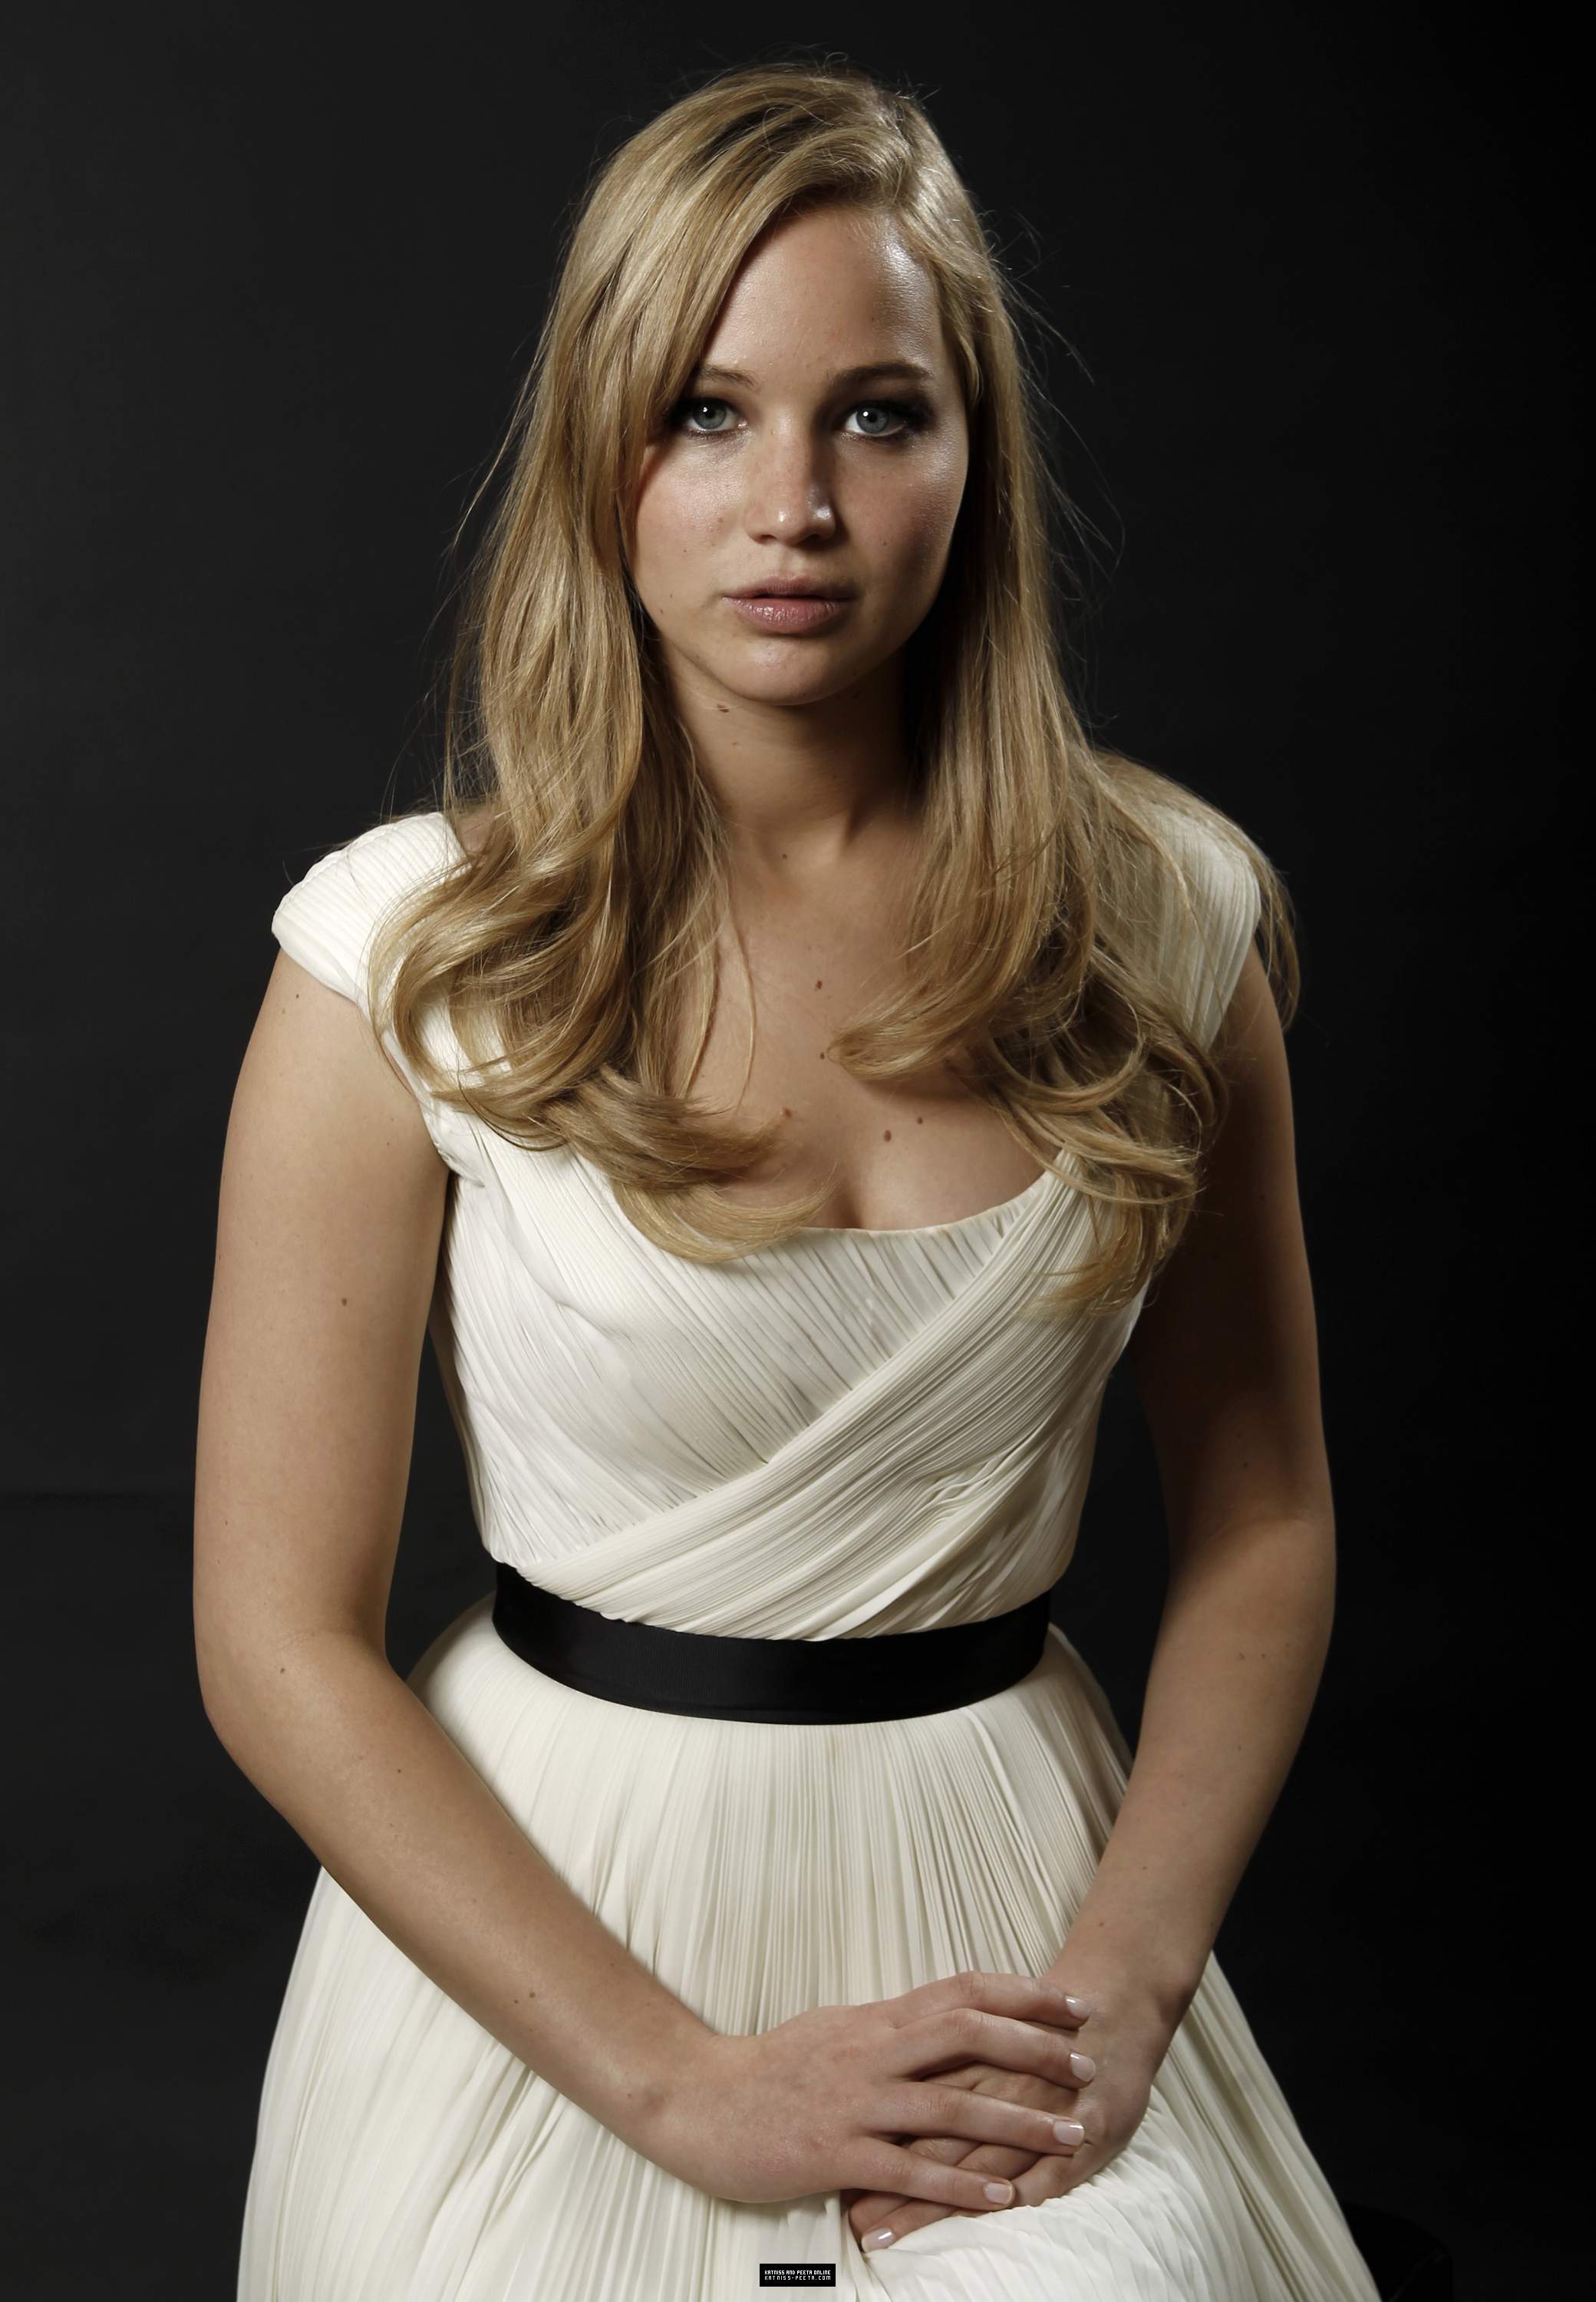 Beautiful Photo of Jennifer Lawrence (26 Pics)